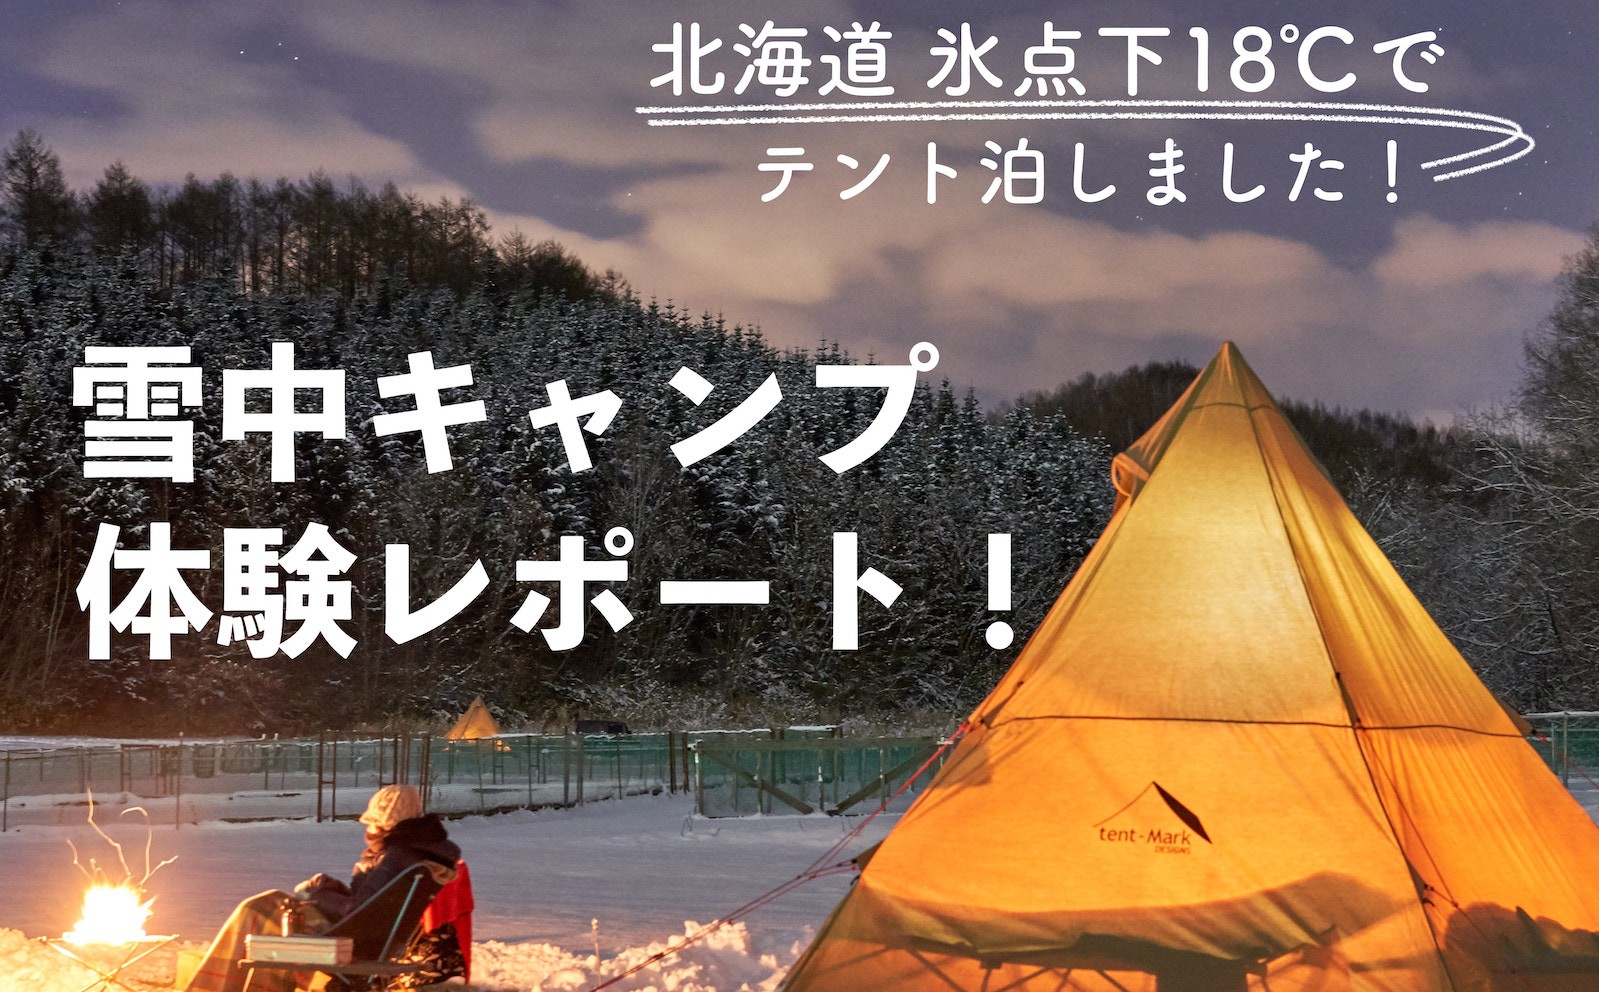 北海道で冬キャンプ テント泊できるキャンプ場が30箇所に増えました 通年営業 冬営業情報 Possibility Laboポジラボ 北海道 キャンプブログ